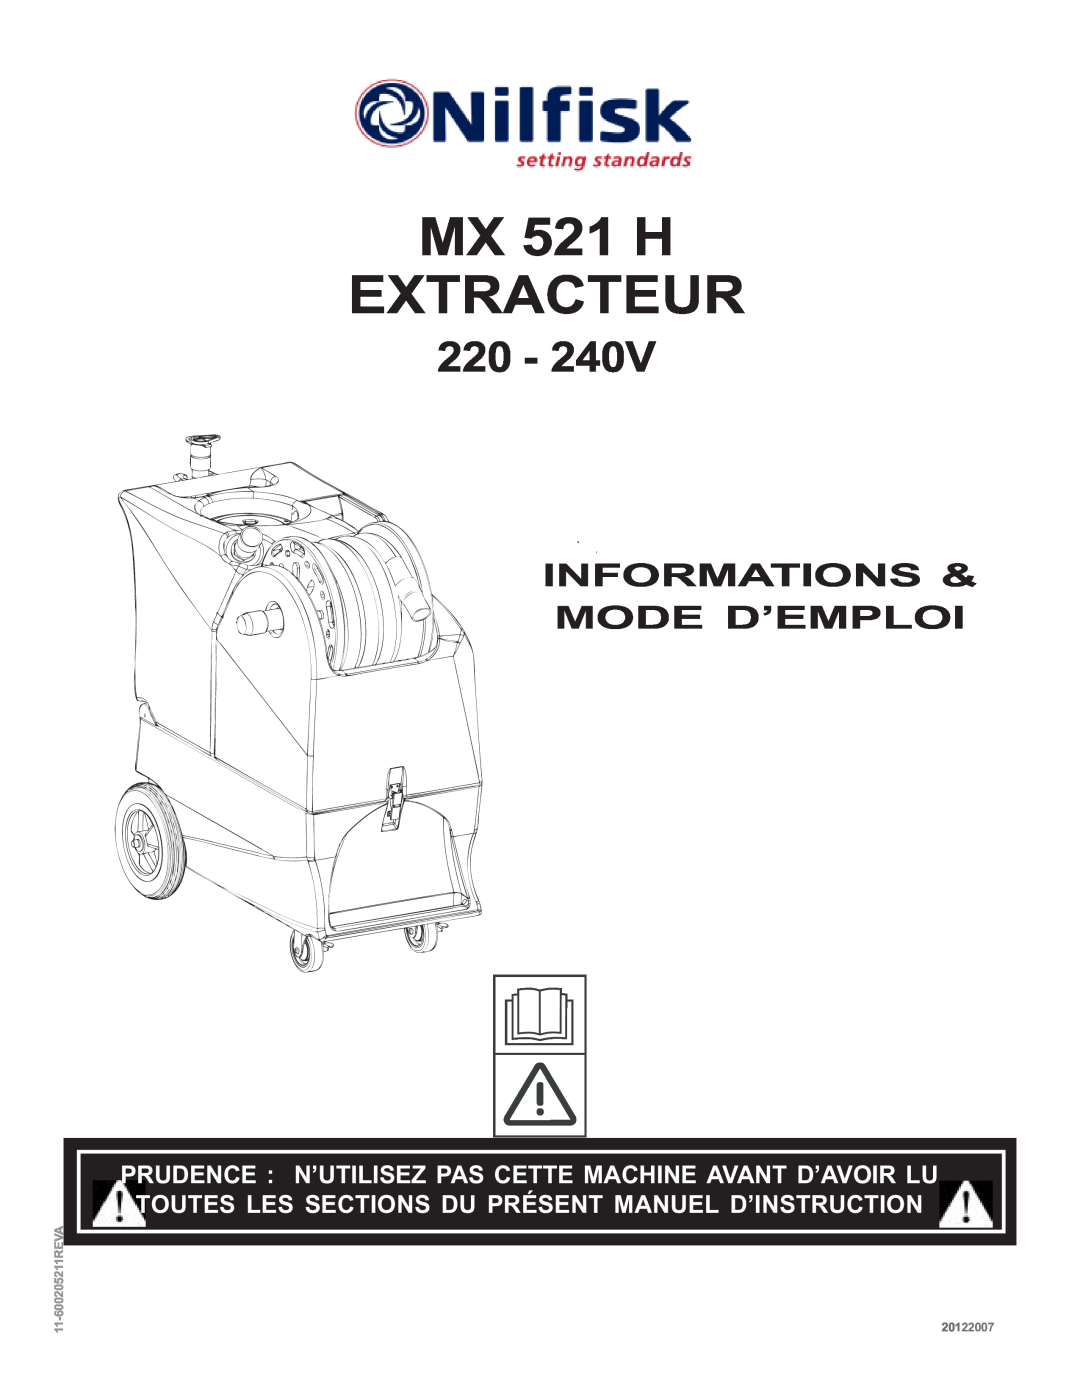 Nilfisk-ALTO manual Informations & Mode D’Emploi, MX 521 H EXTRACTEUR, 11-600205211REVA, 20122007 